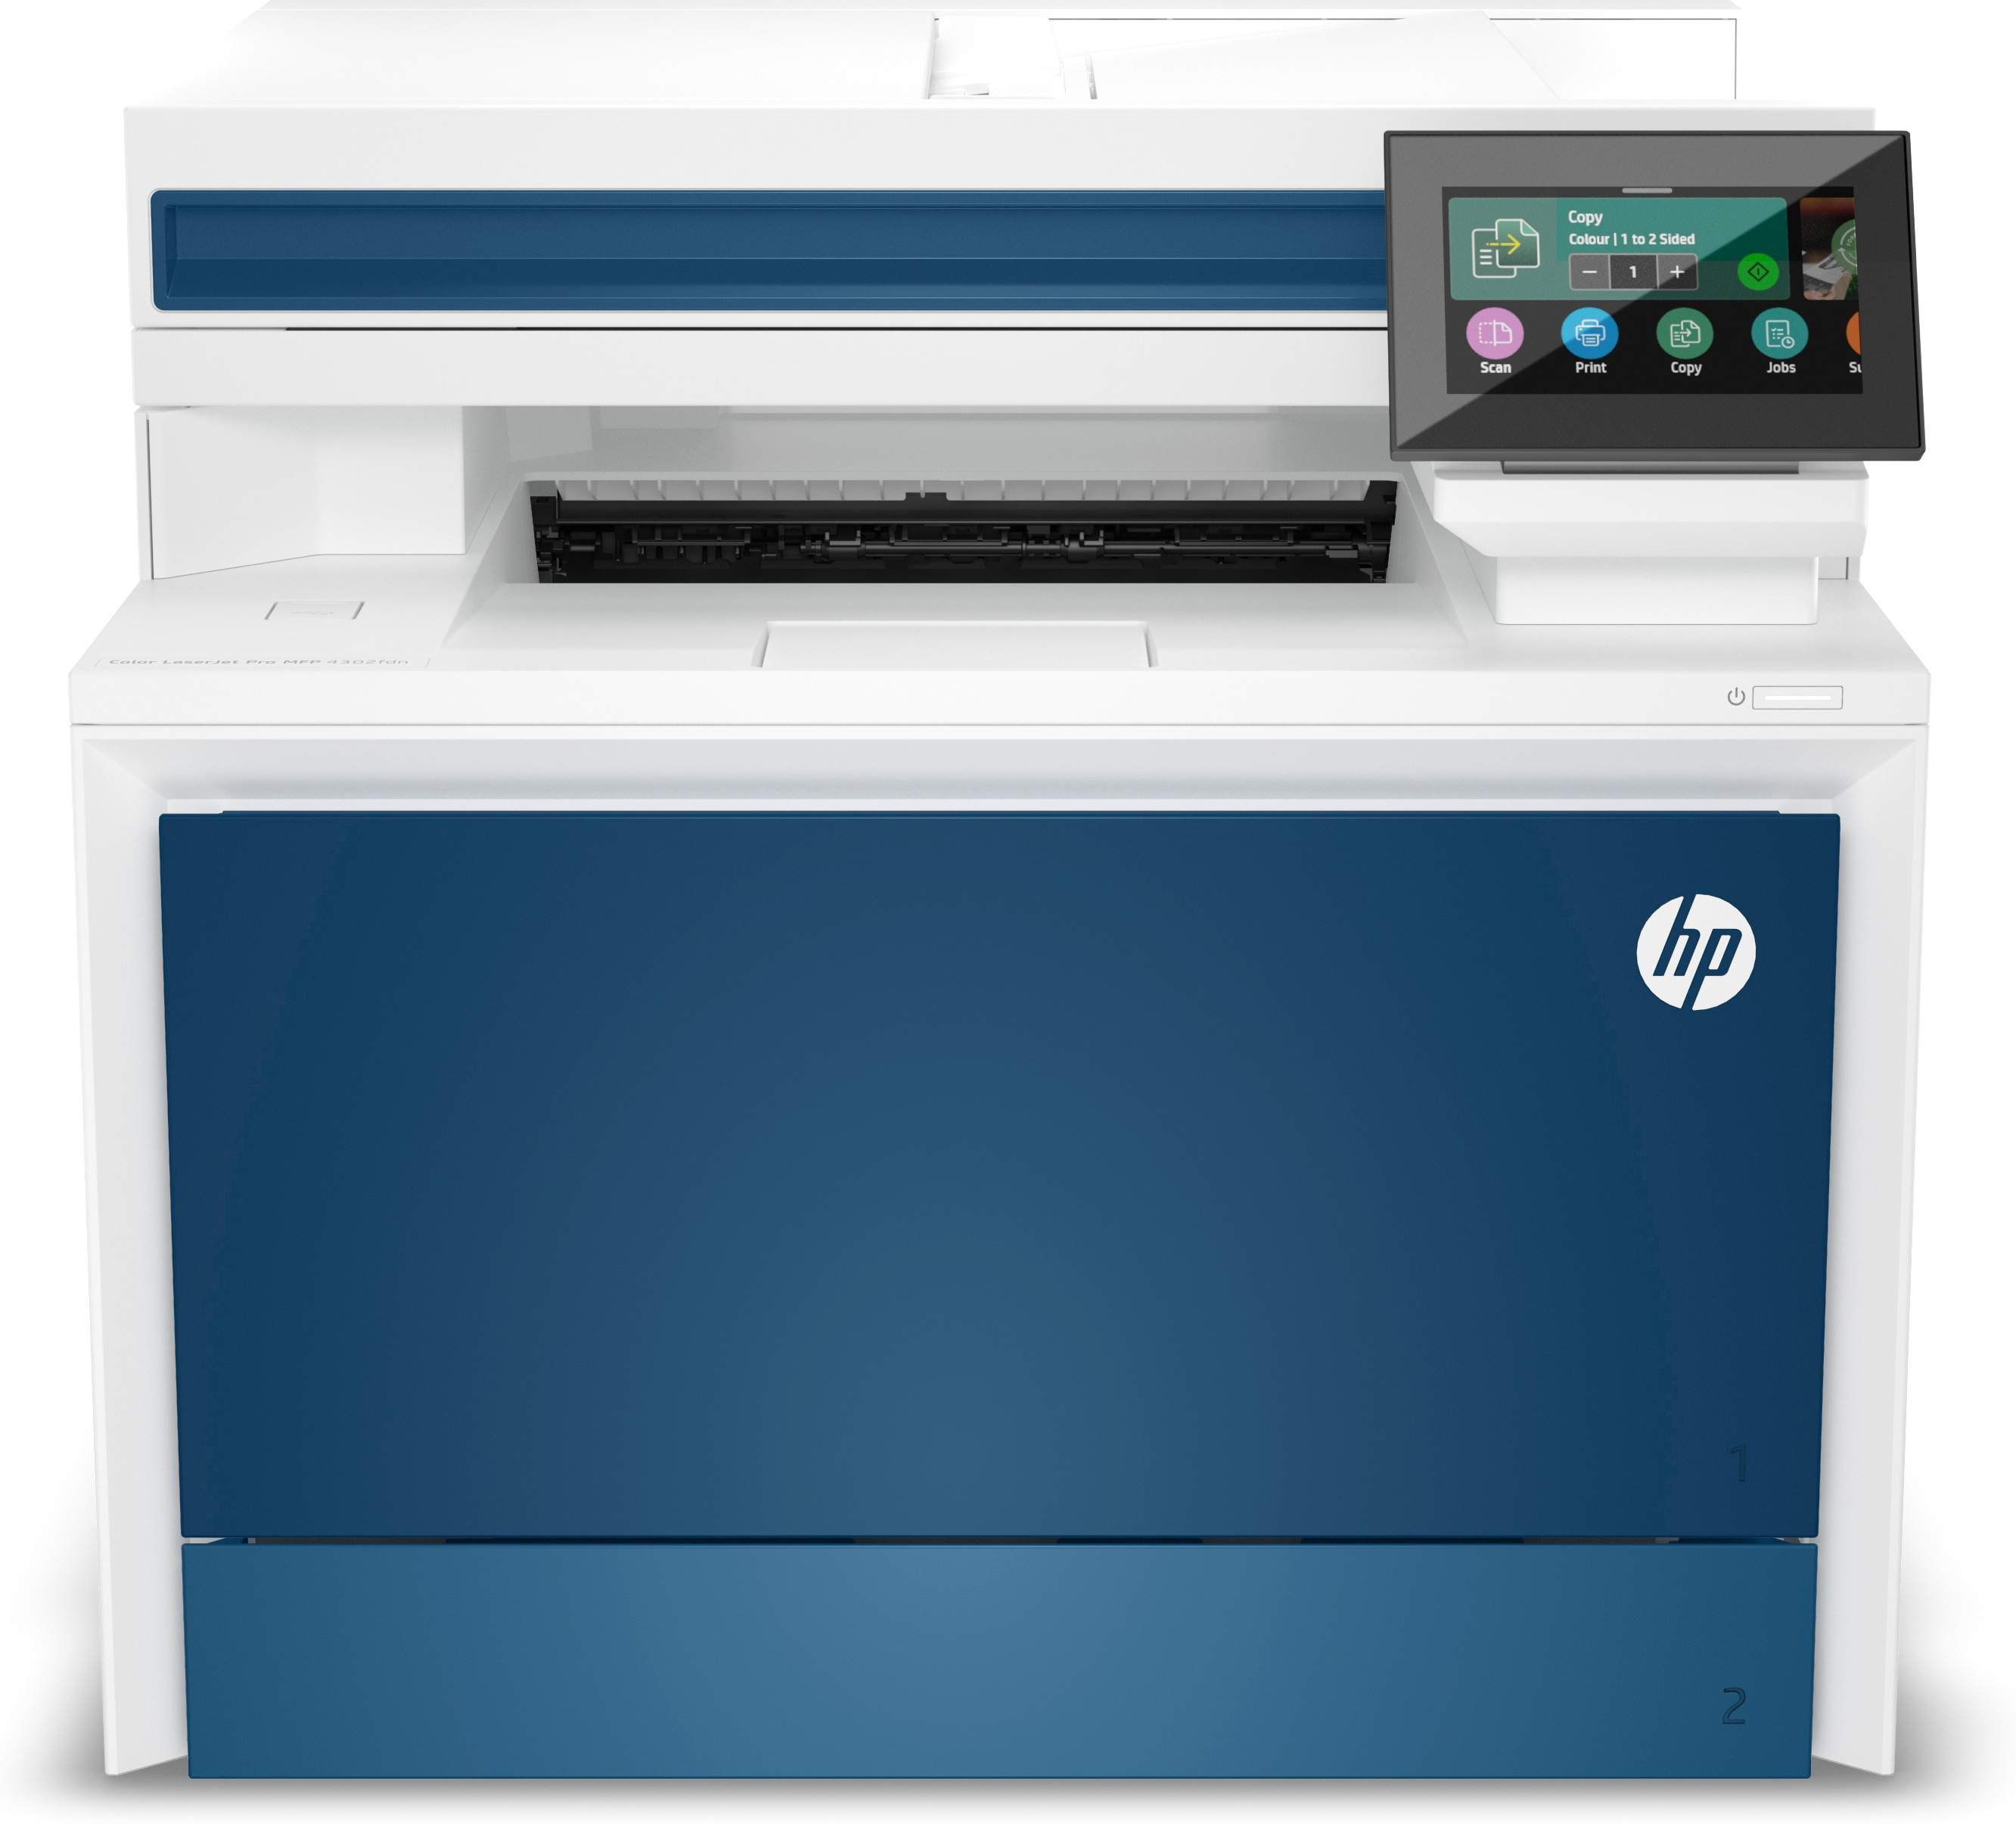 Image of HP Color LaserJet Pro Stampante multifunzione 4302fdn, Colore, Stampante per Piccole e medie imprese, Stampa, copia, scansione, fax, Stampa da smartphone o tablet; Alimentatore automatico di documenti; Stampa fronte/retro